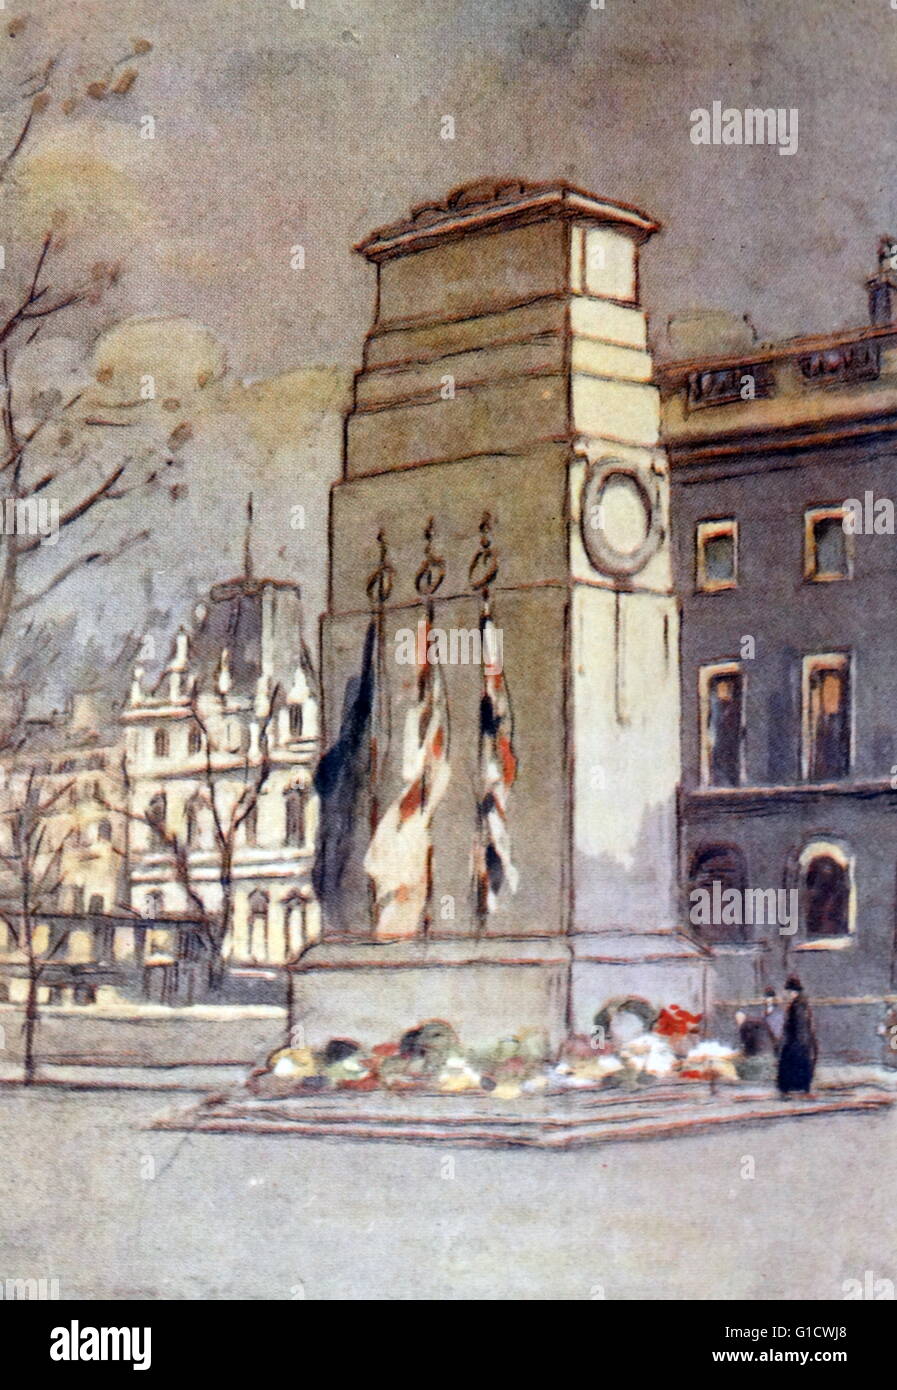 Farbige Skizze der Kenotaph, das Kriegerdenkmal am Whitehall in London gelegen. Vom 20. Jahrhundert Stockfoto